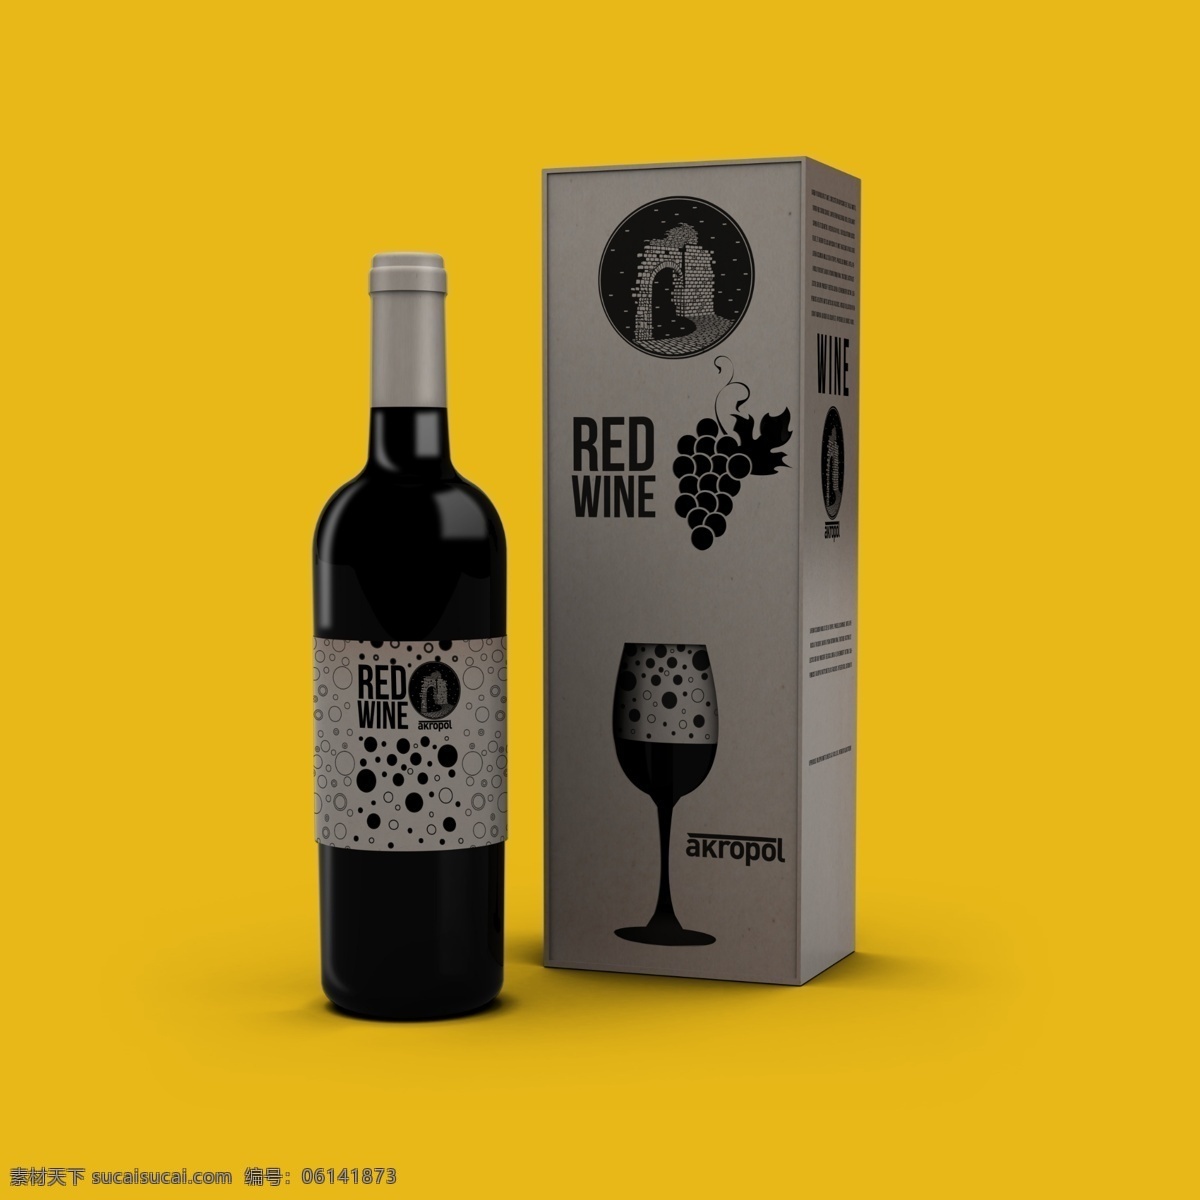 红酒瓶包装 红酒 香槟 包装 蓝色 黑色 简洁 葡萄酒 大气 起泡酒 黄色 礼盒 包装设计